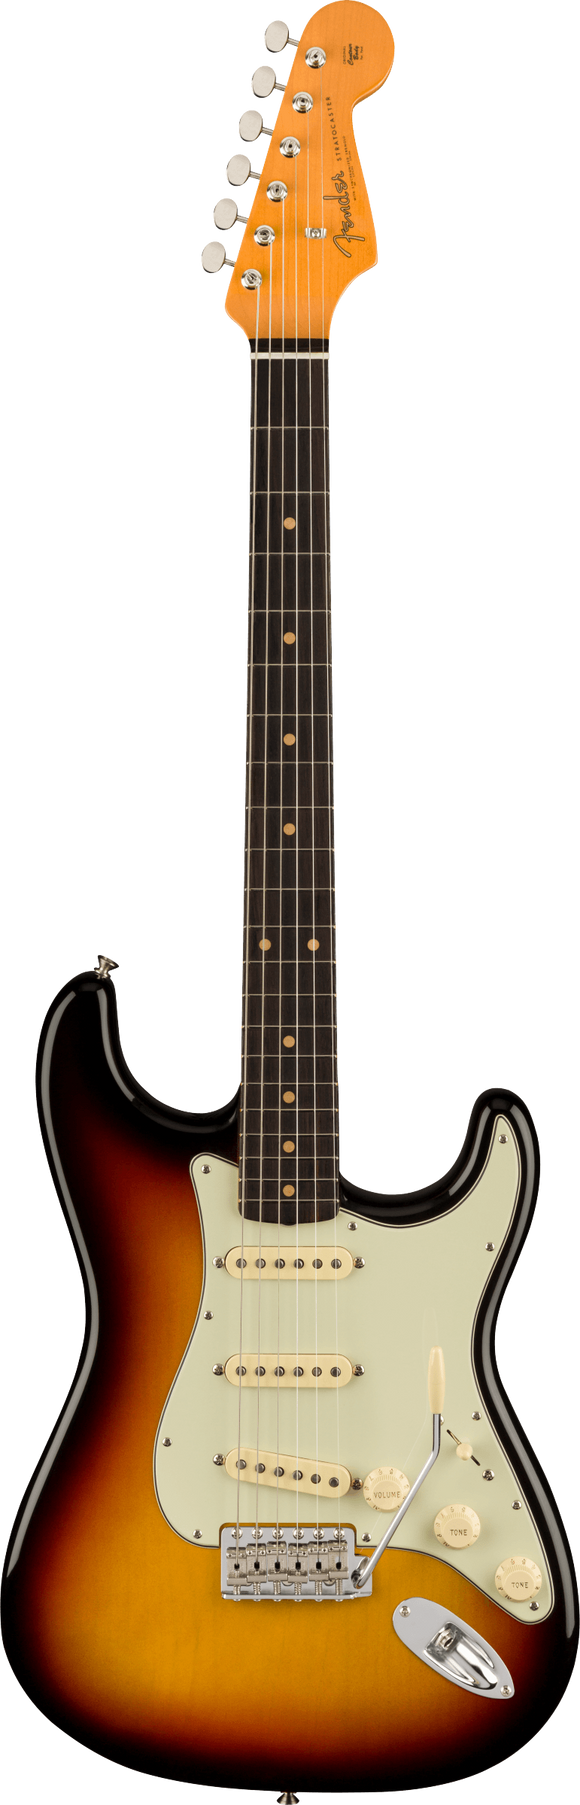 Fender American Vintage II 1961 Stratocaster, Rosewood Fingerboard, 3-Color Sunburst